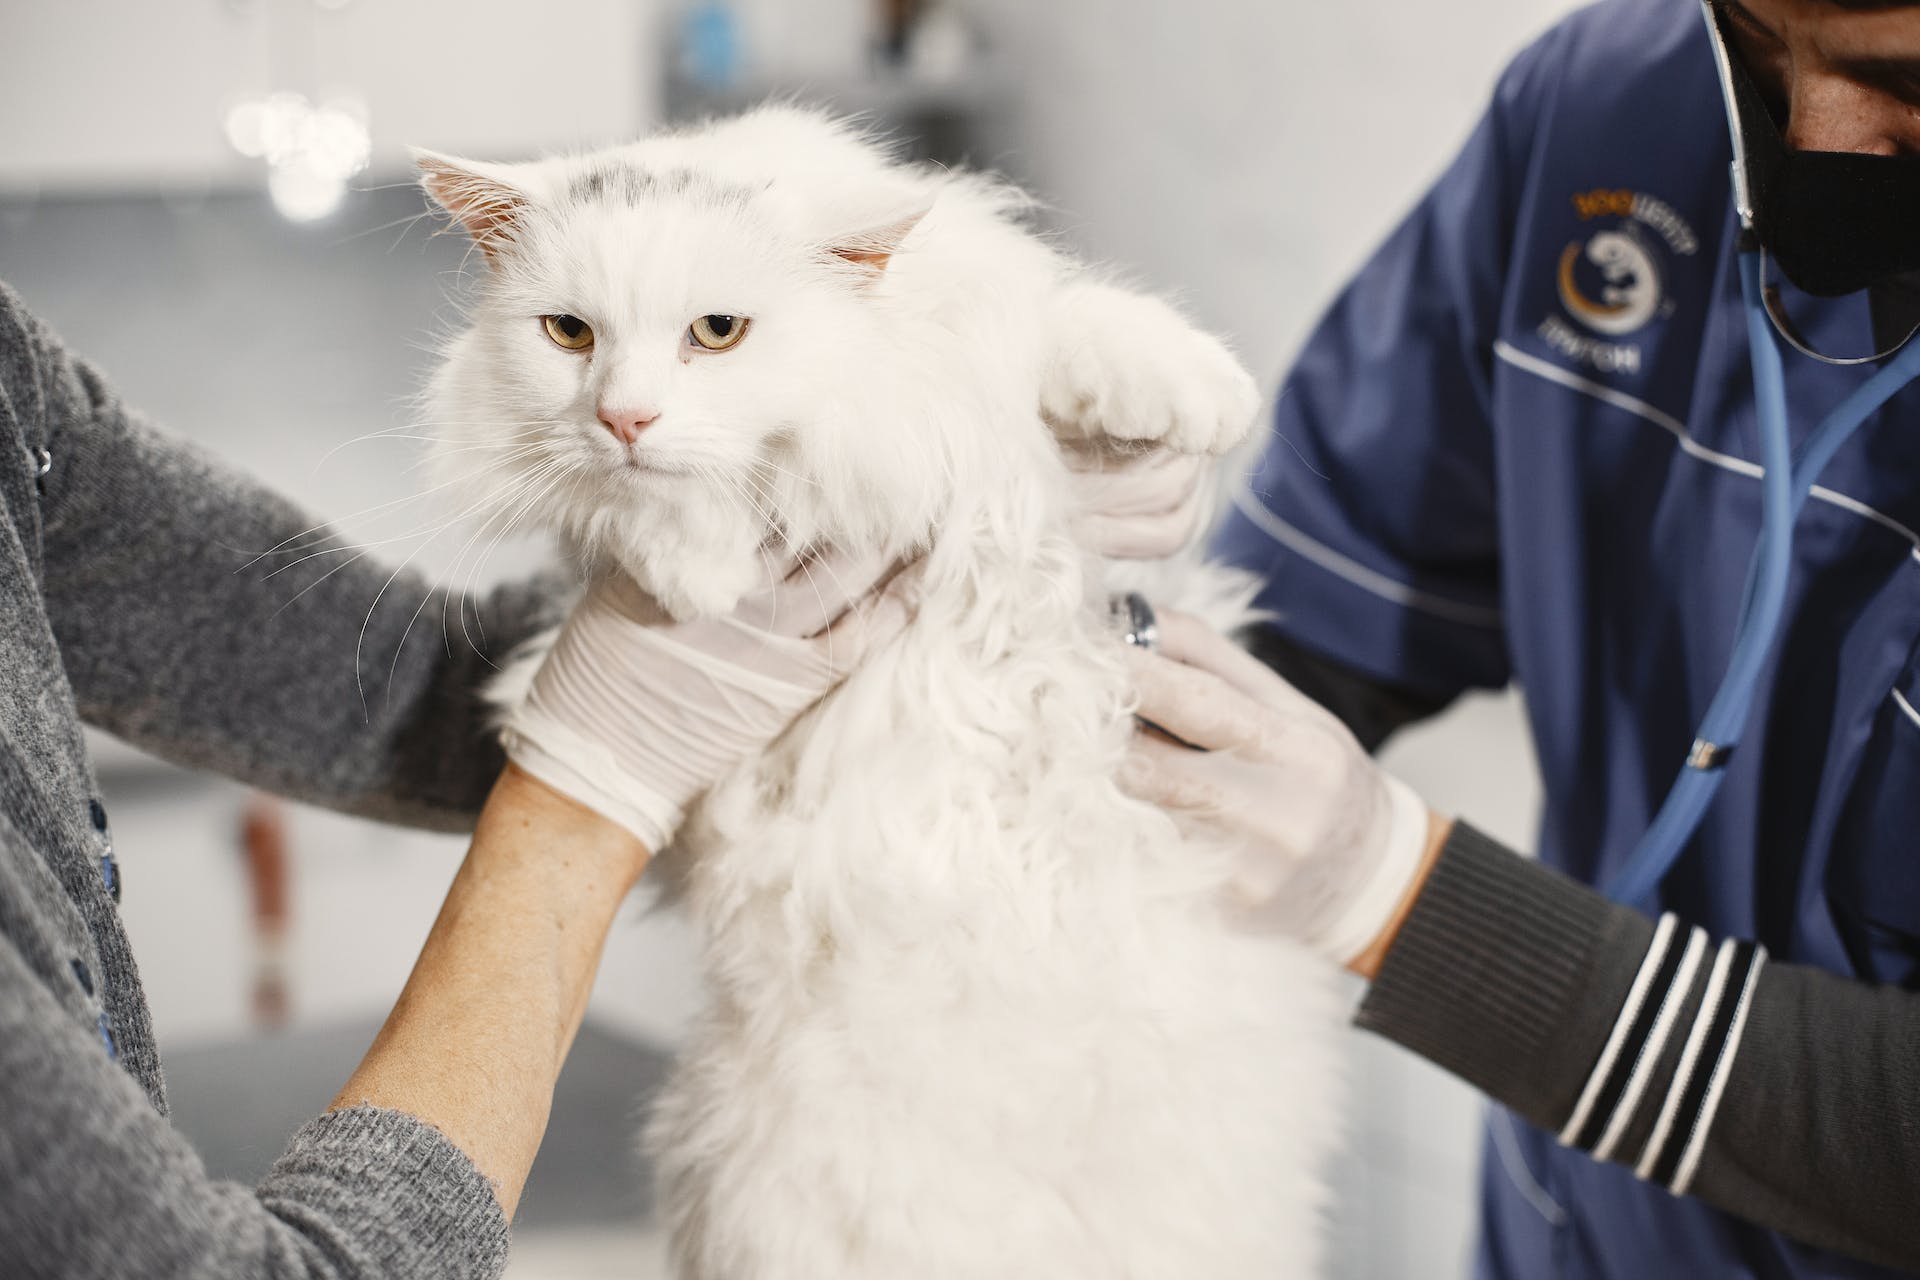 A cat at a vet's clinic | Source: Pexels